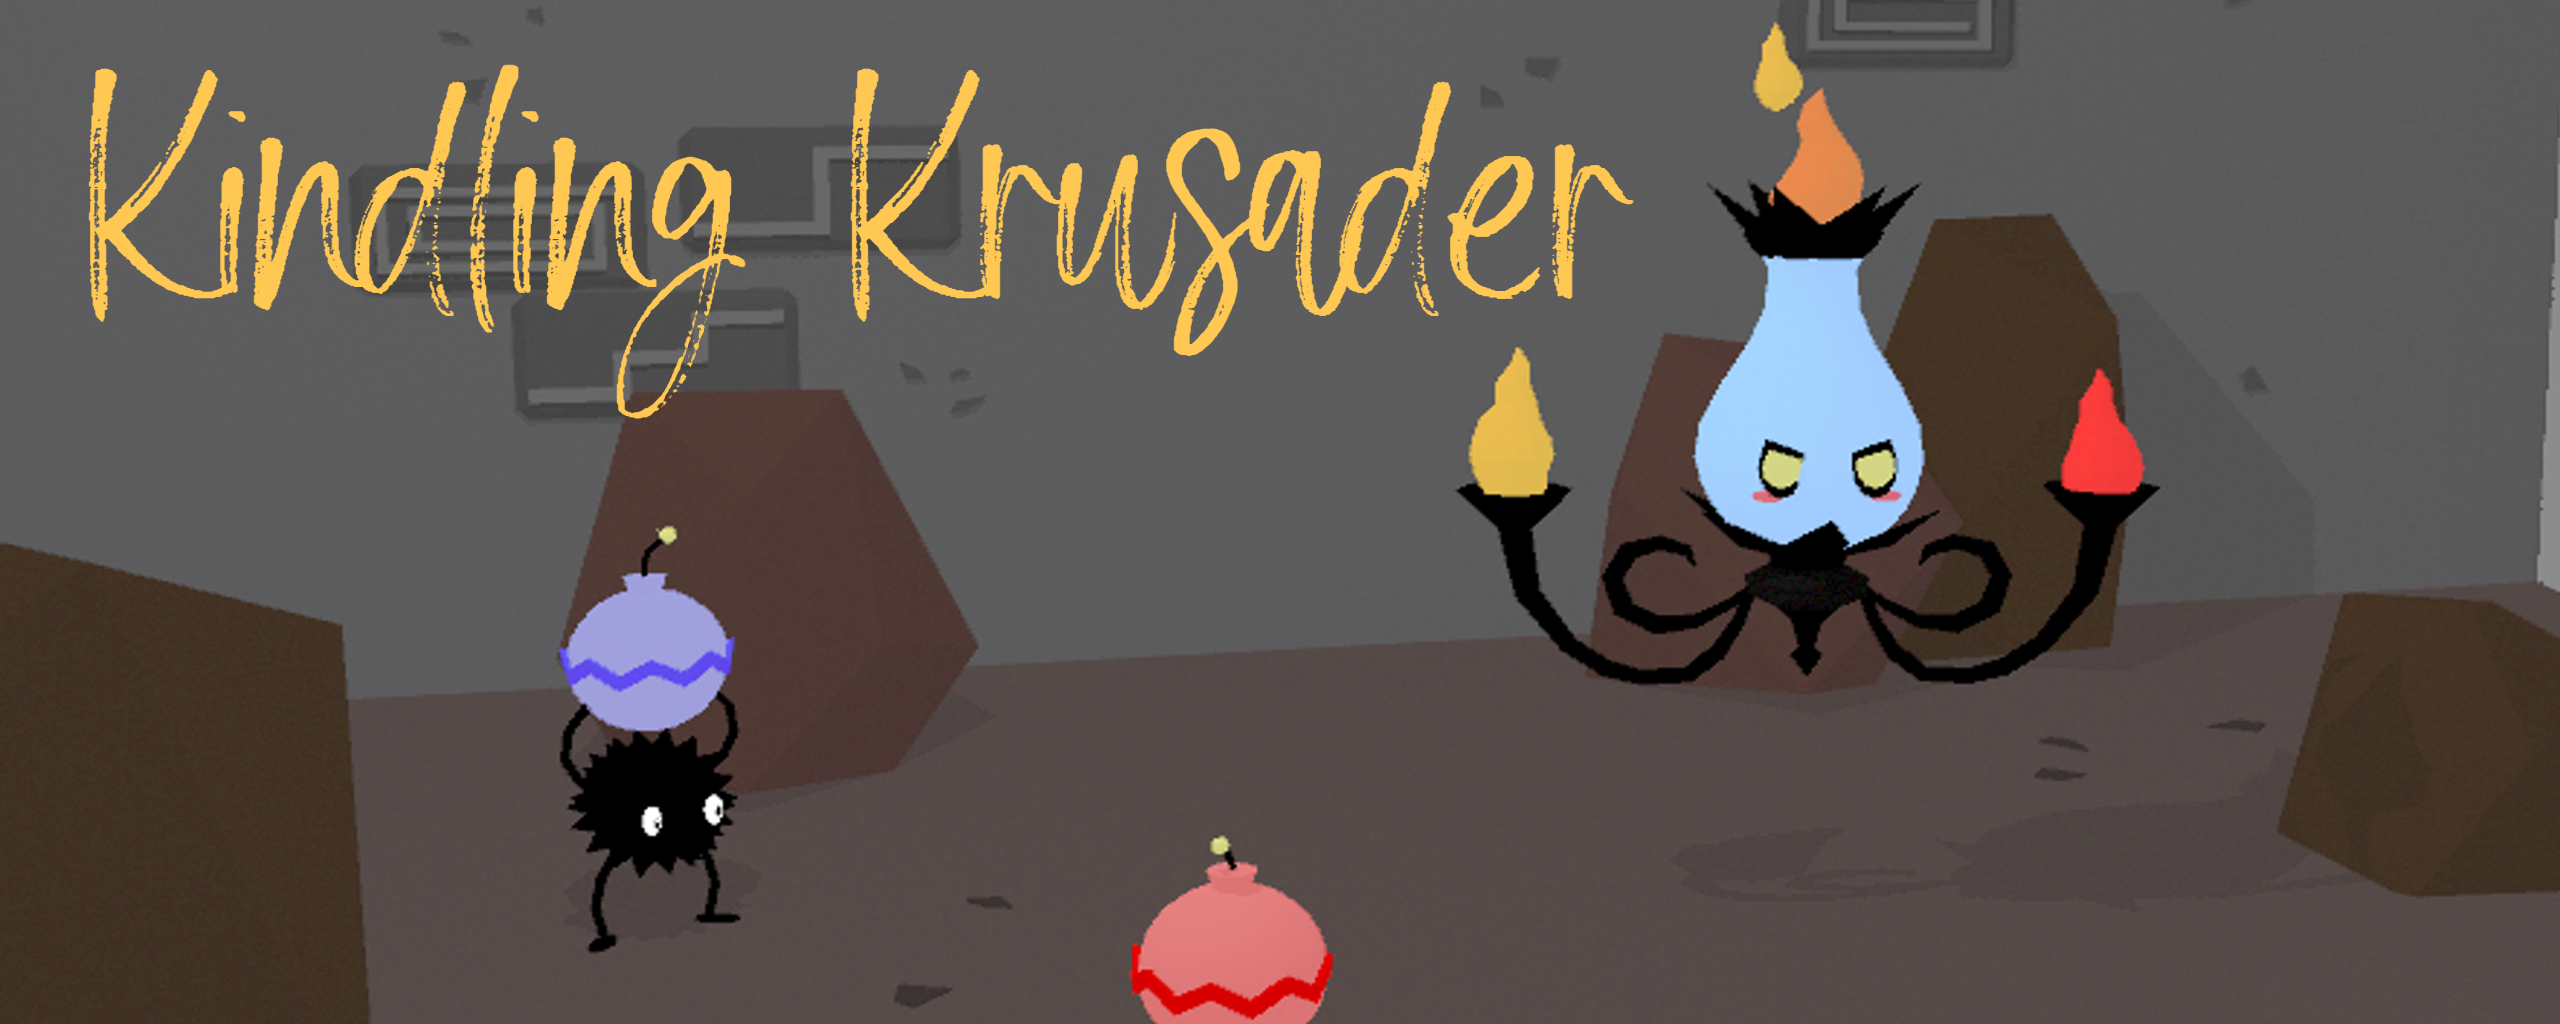 Kindling Krusader